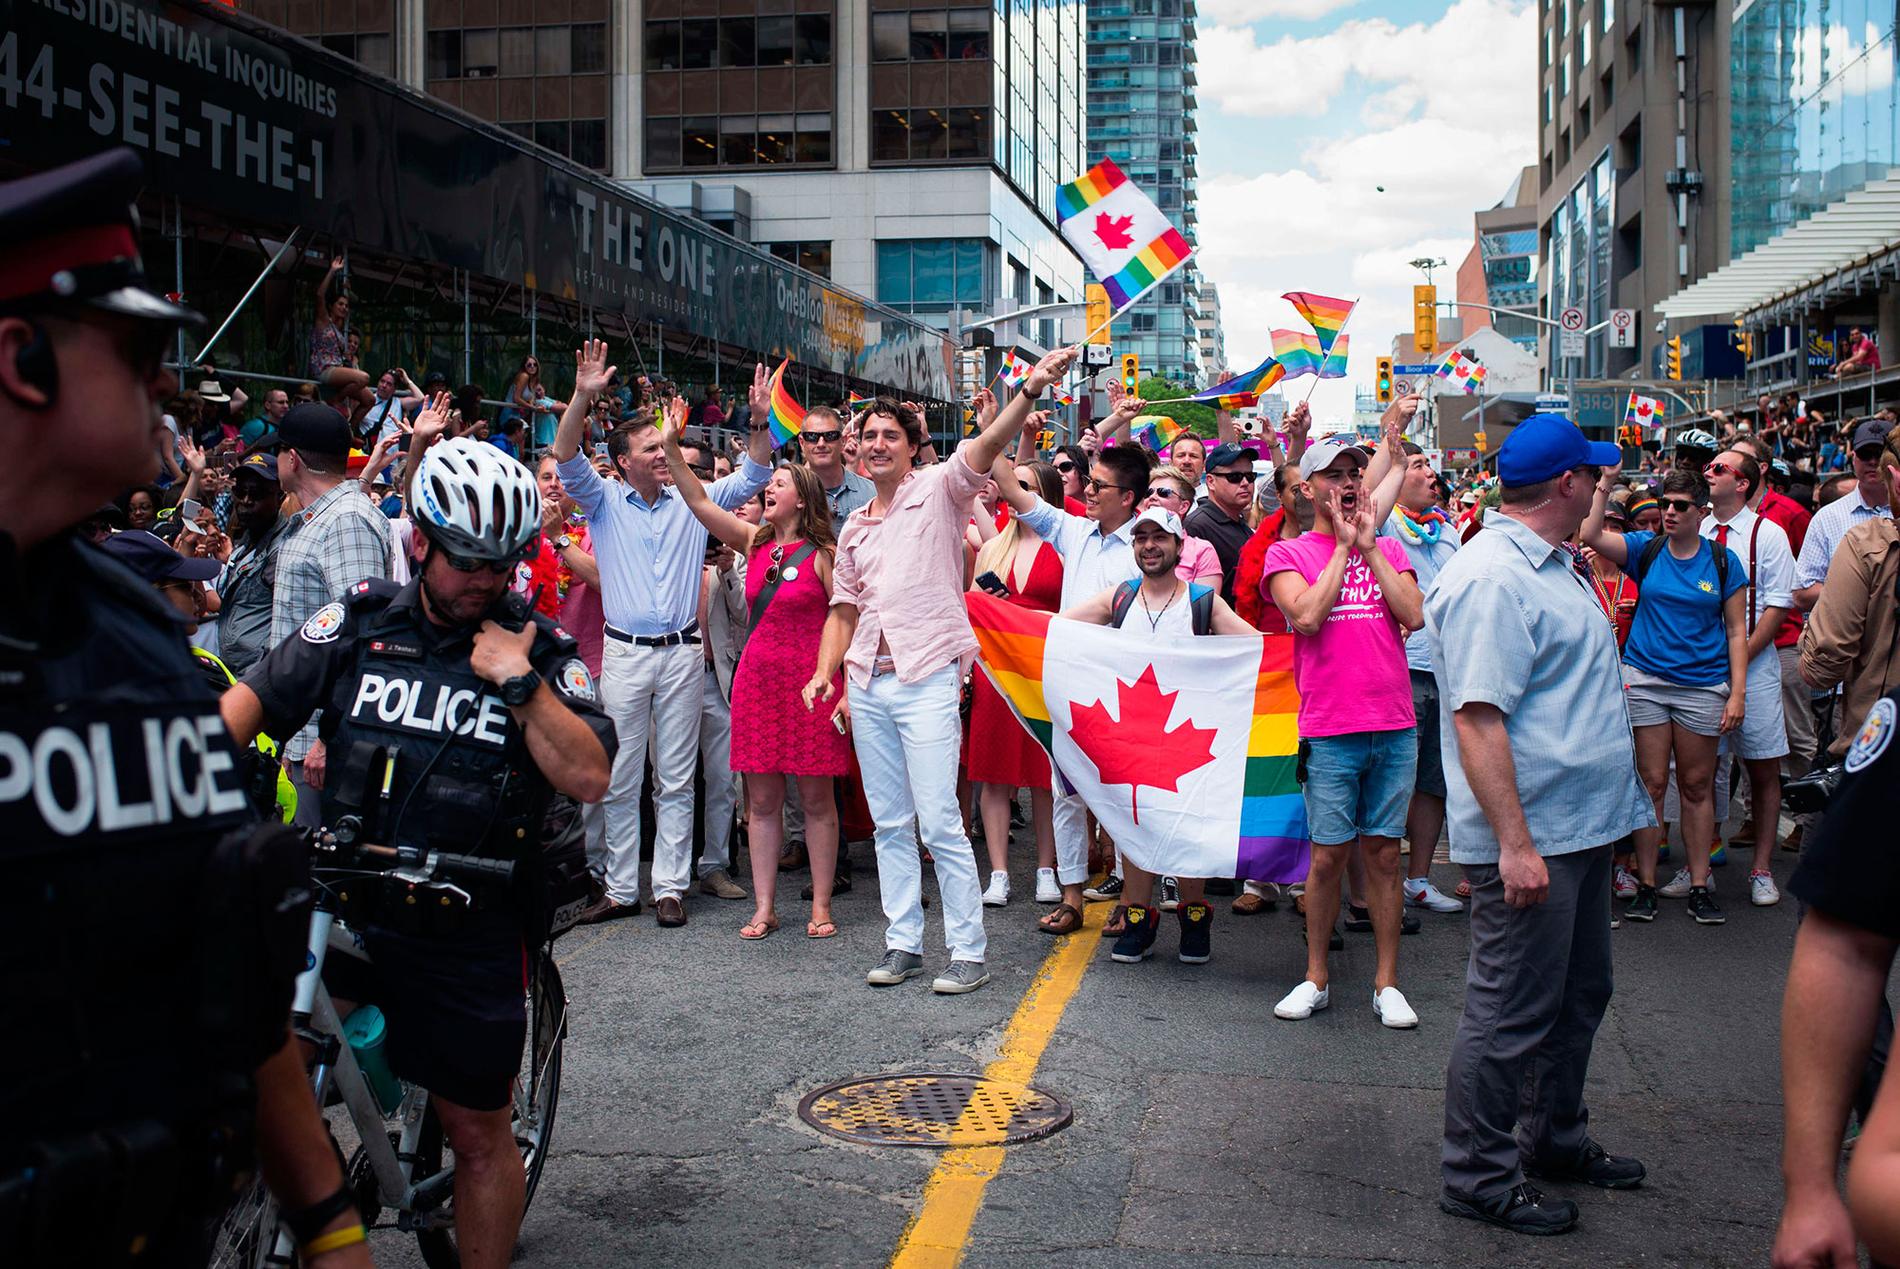 Kanadas premiärminister Justin Trudeau, ståendes i mitten, viftar med en regnbågsflagga under den årliga  Pride-festivalen i Toronto, Kanada, den 3 juli.